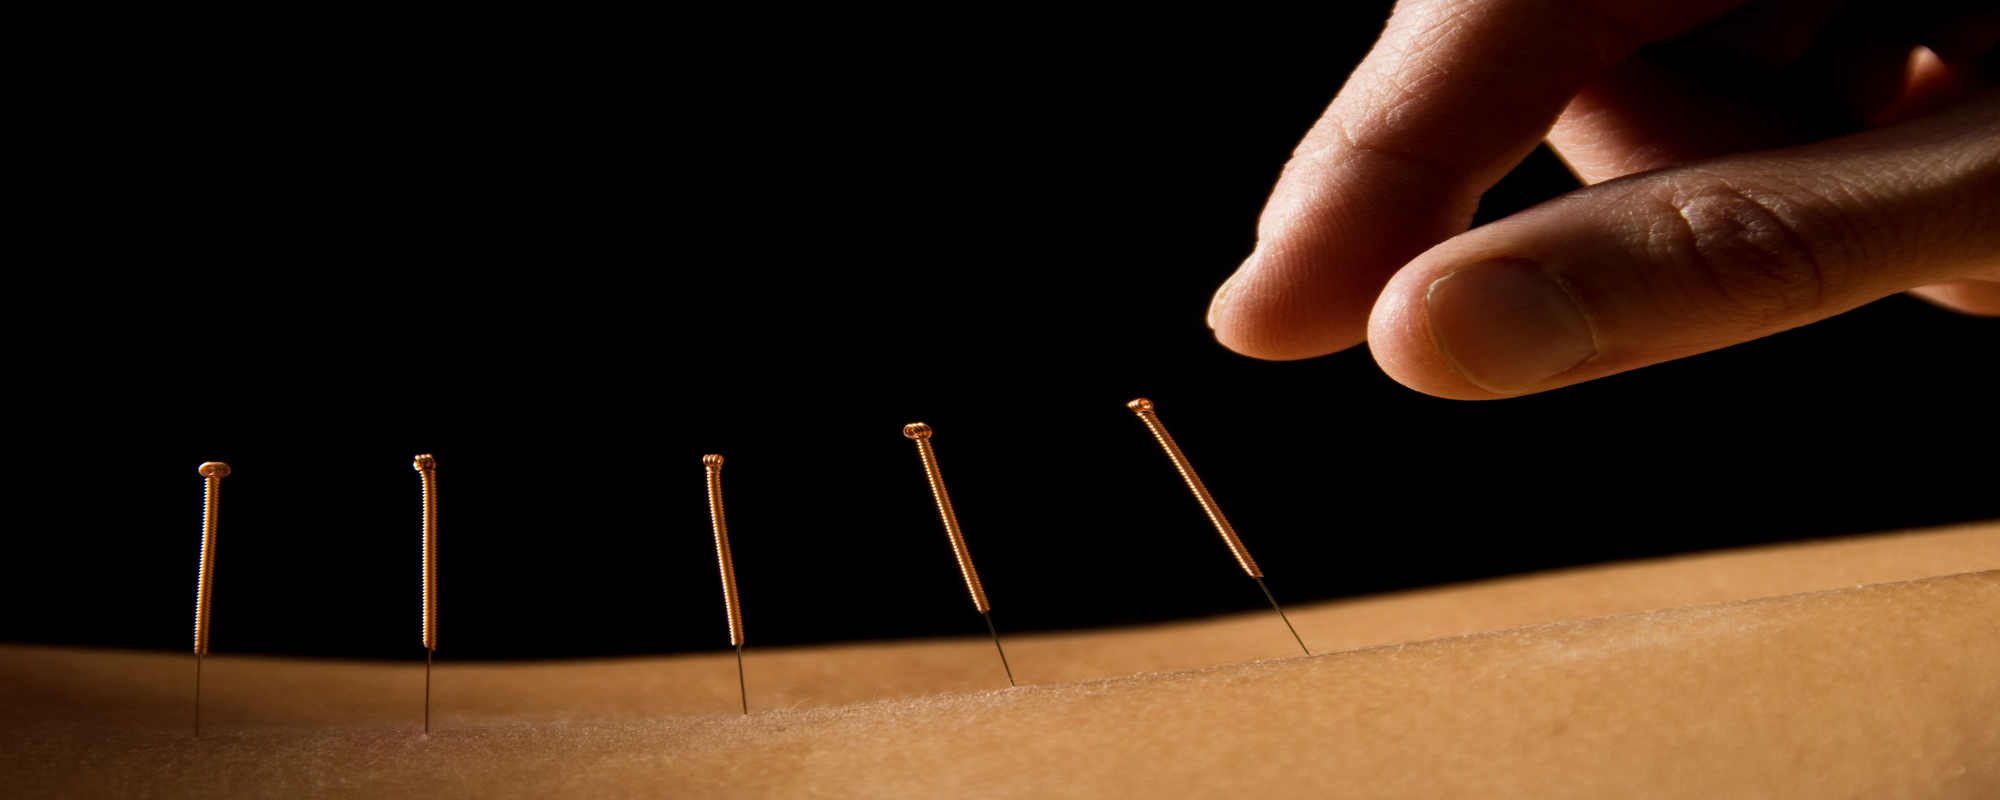 Acupunctura este un exemplu de asistenta medicala holistica